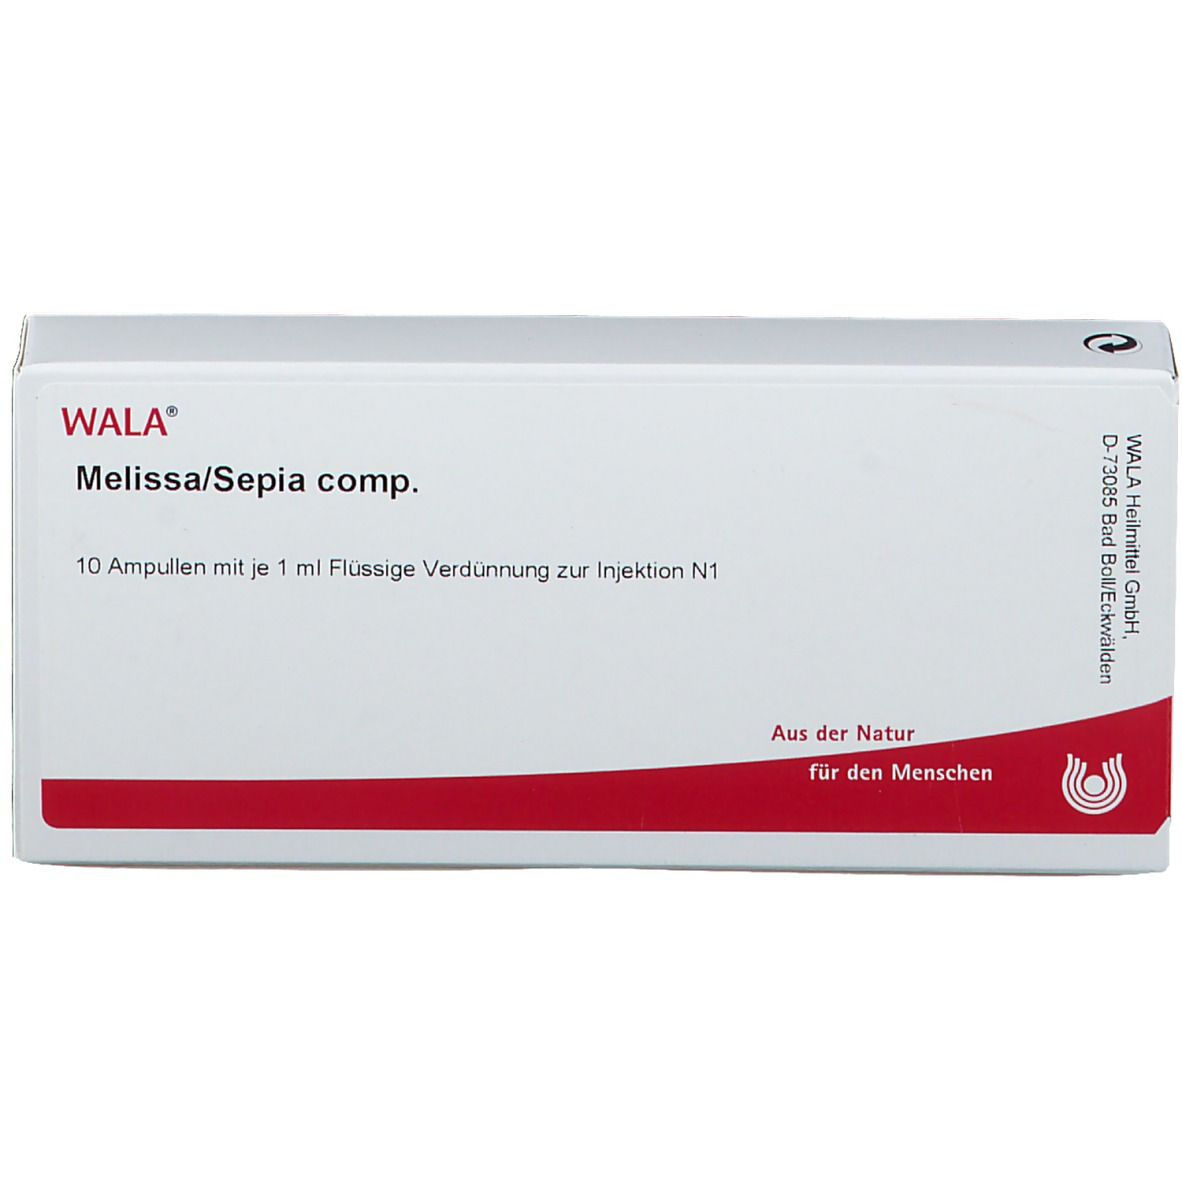 WALA® MELISSA/SEPIA Comp. Ampullen